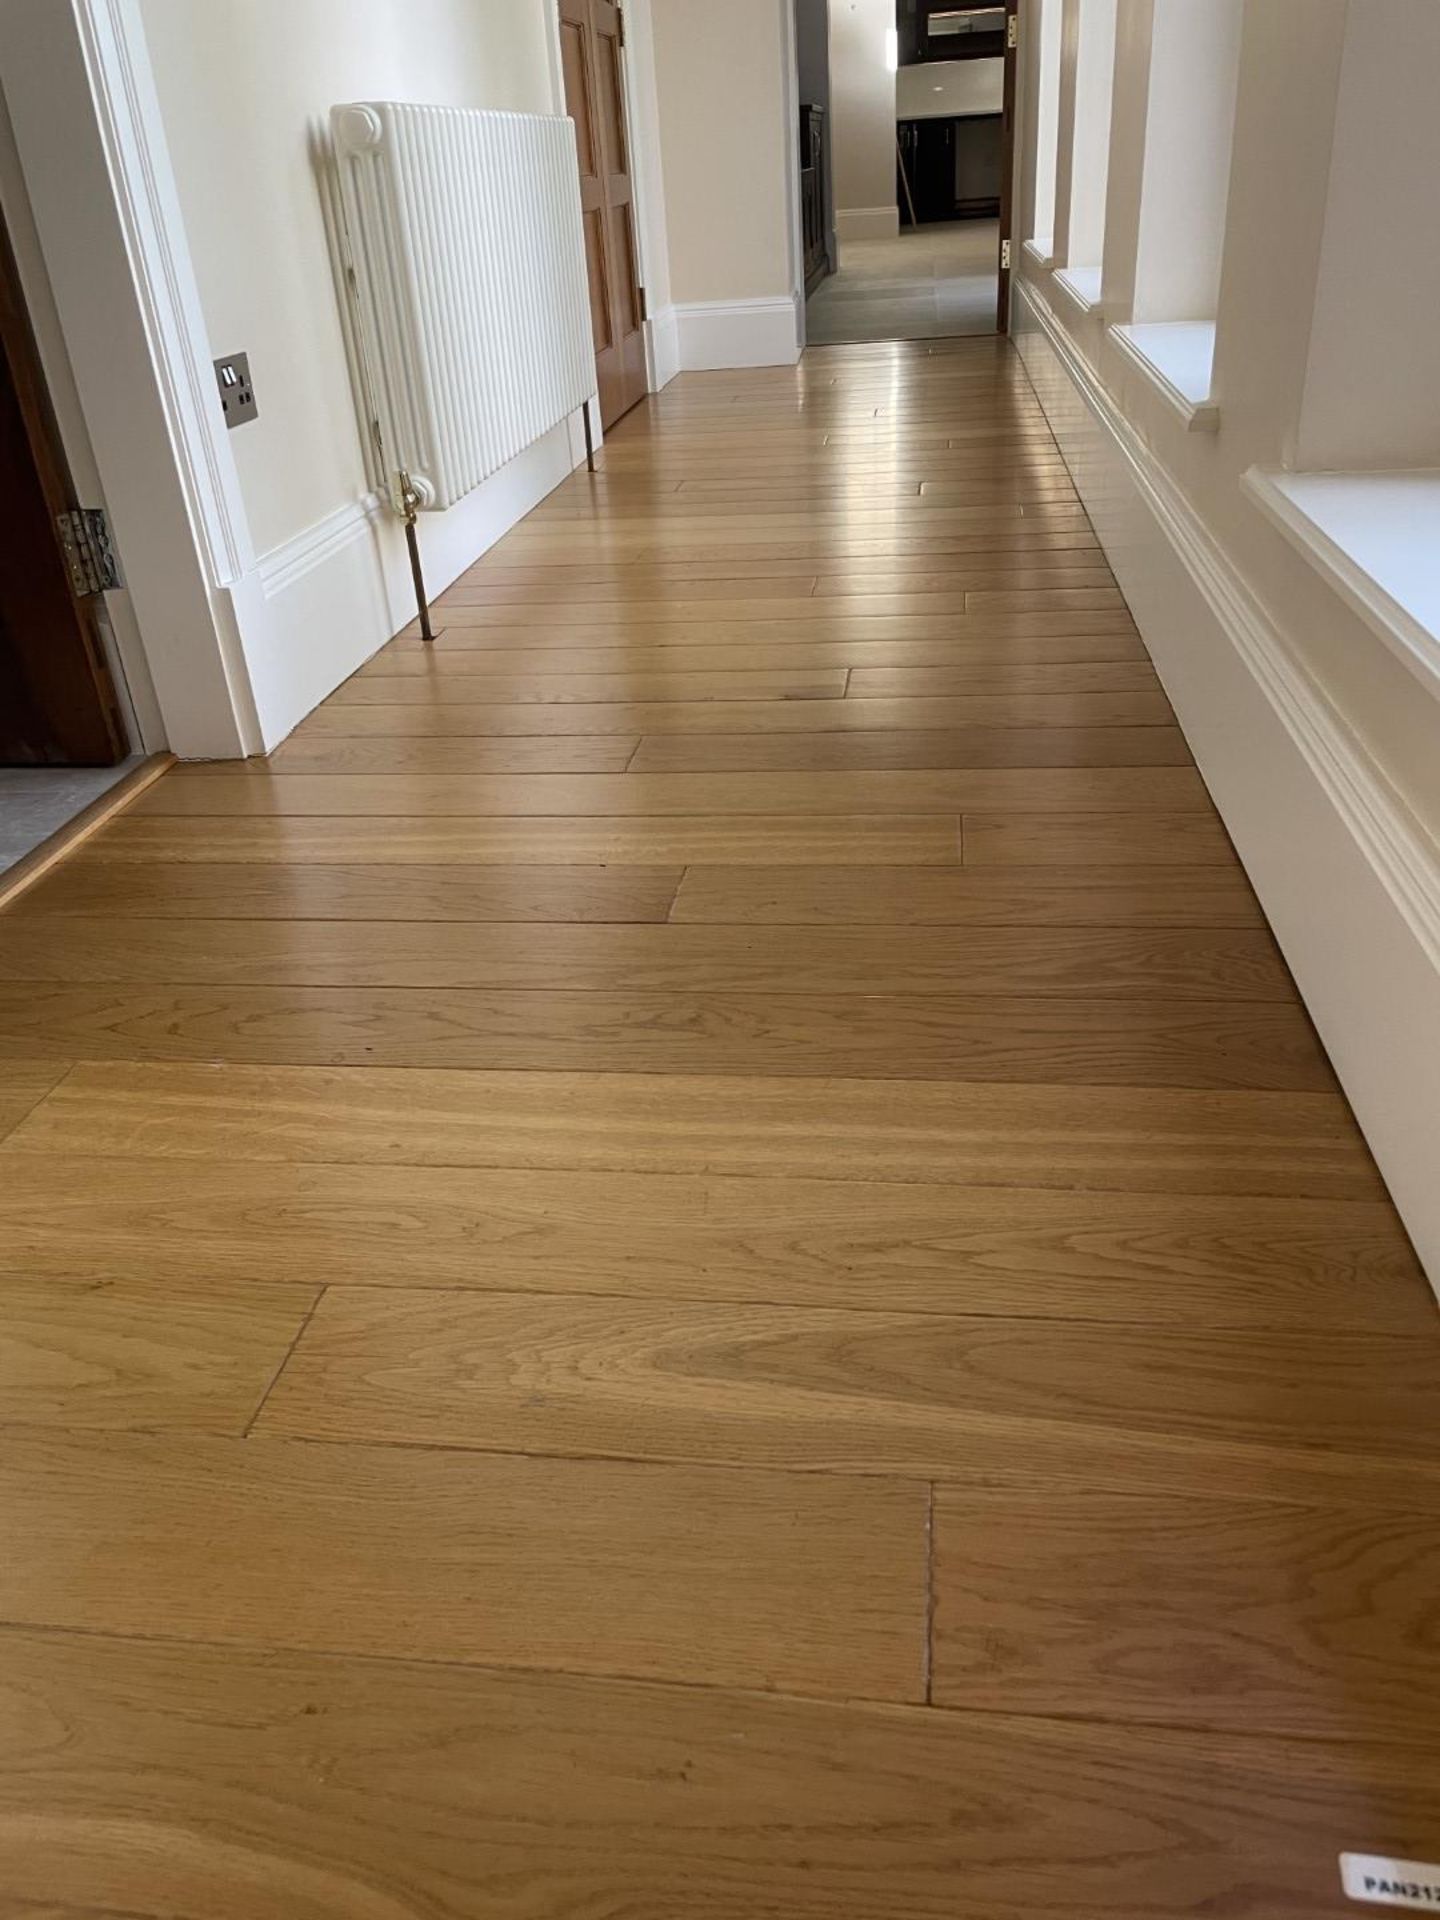 Fine Oak Hardwood Hallway Flooring - 6.3 x 1.2 Metres - Ref: PAN212 - CL896 - NO VAT - Image 10 of 12